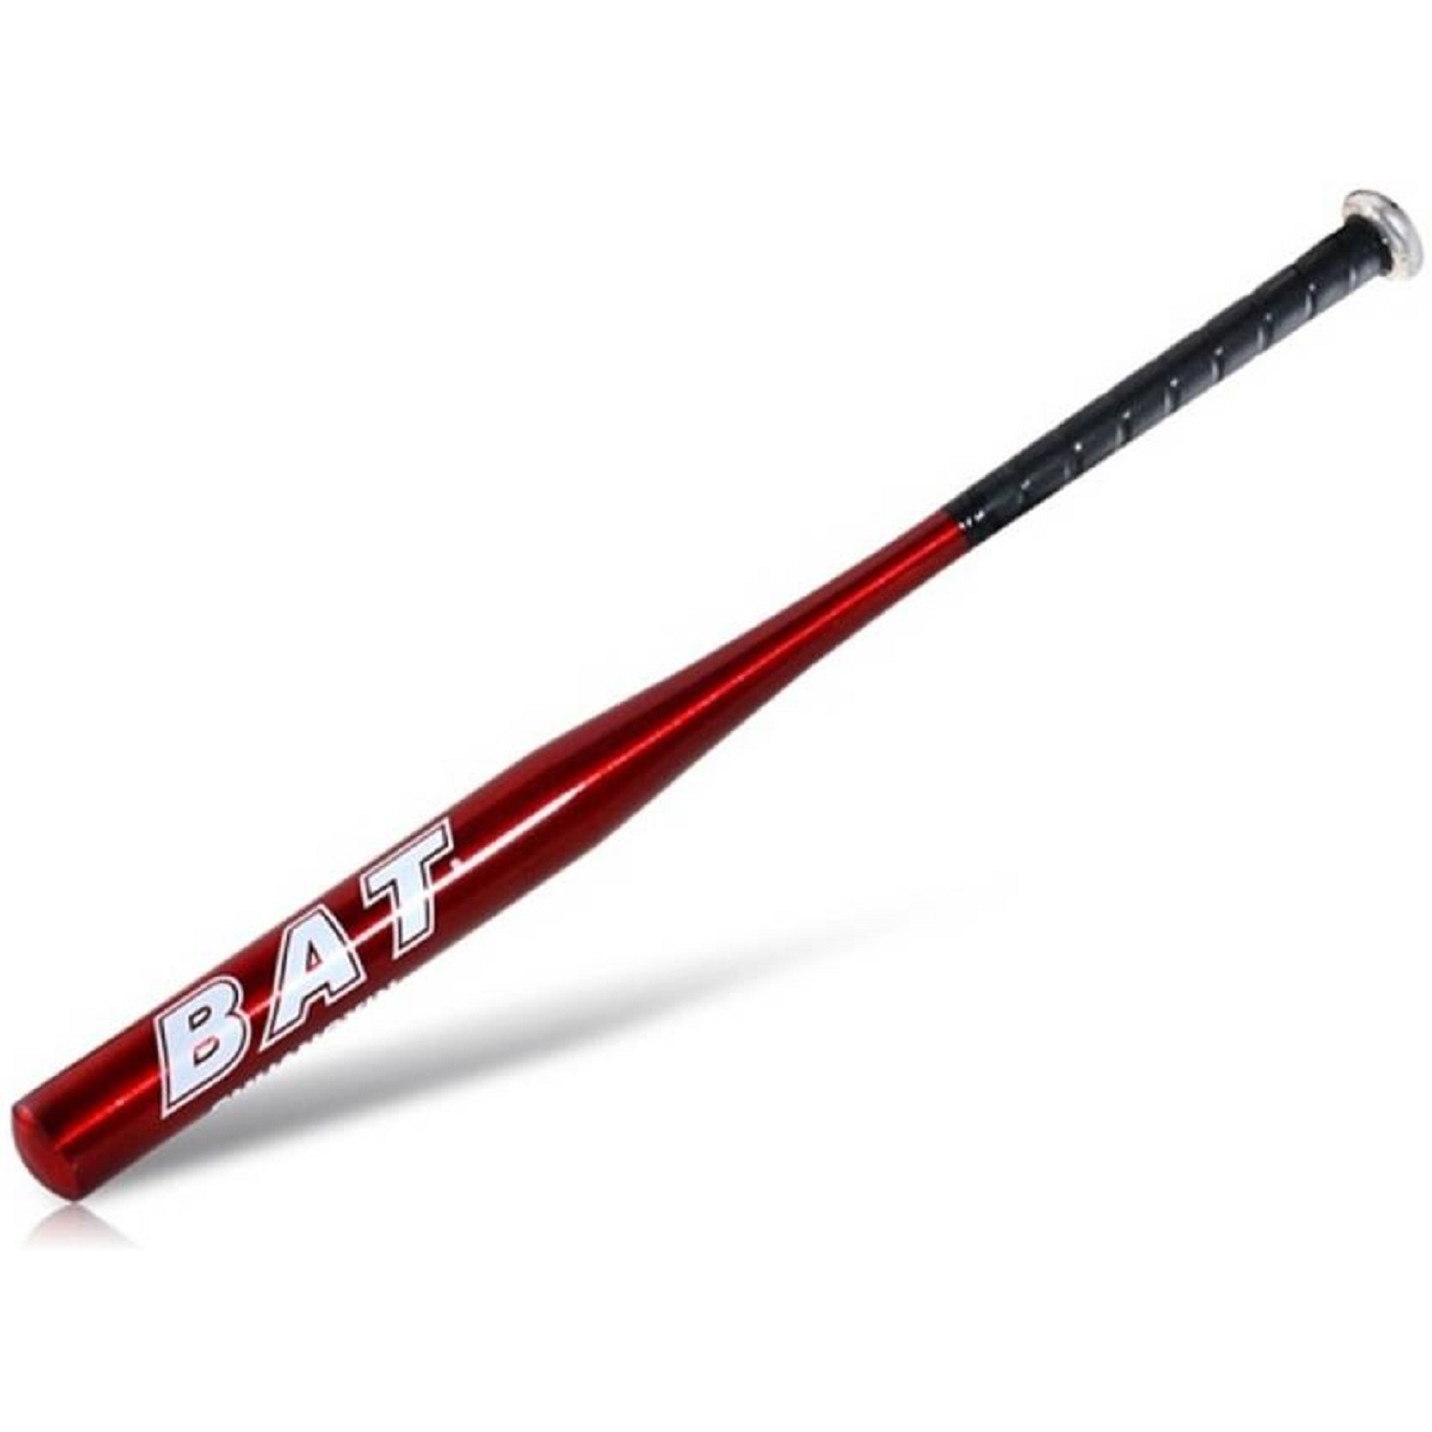 Можно купить биту. Бита бейсбольная bat красная. Бита бейсбольная (30" (75см) алюминий / черная). Бейсбольная бита черная. Бита бейсбольная деревянная черная.